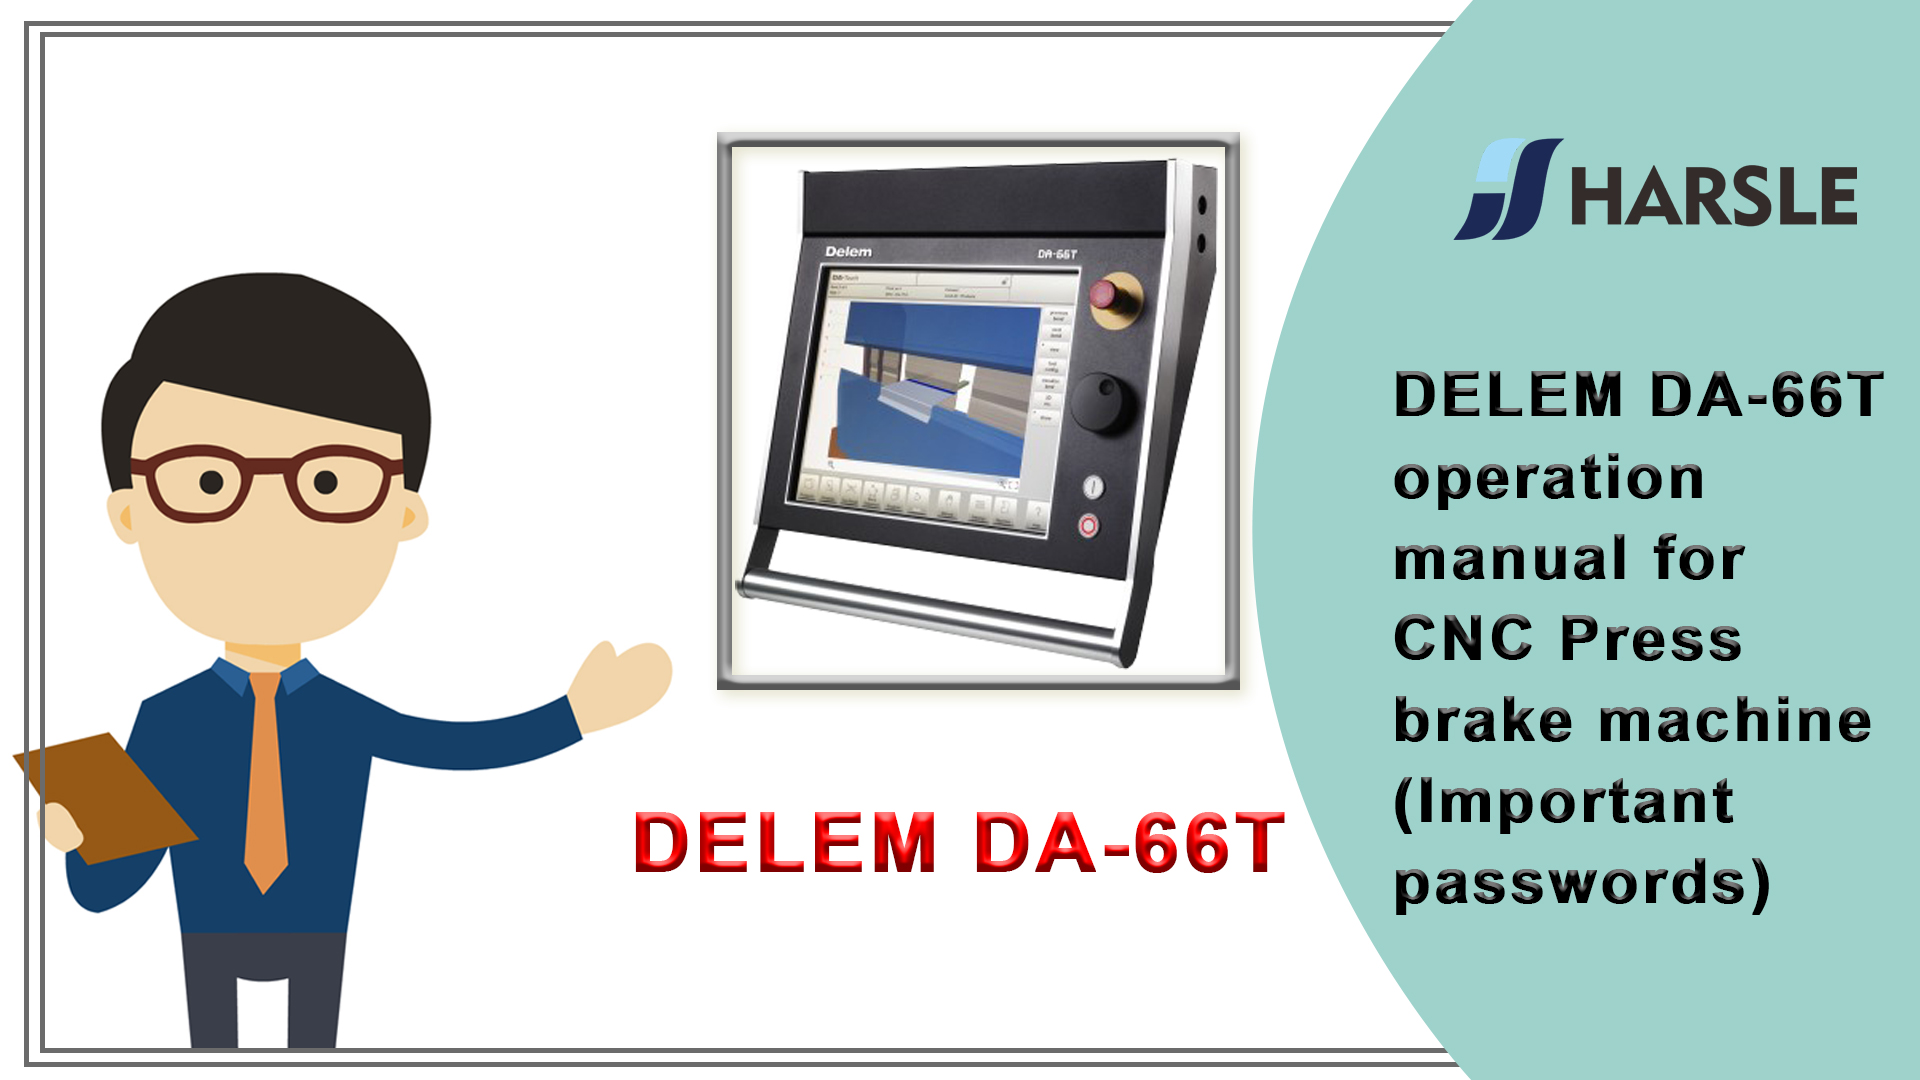 DELEM DA-66T manuale operativo per pressa piegatrice CNC (password importanti)